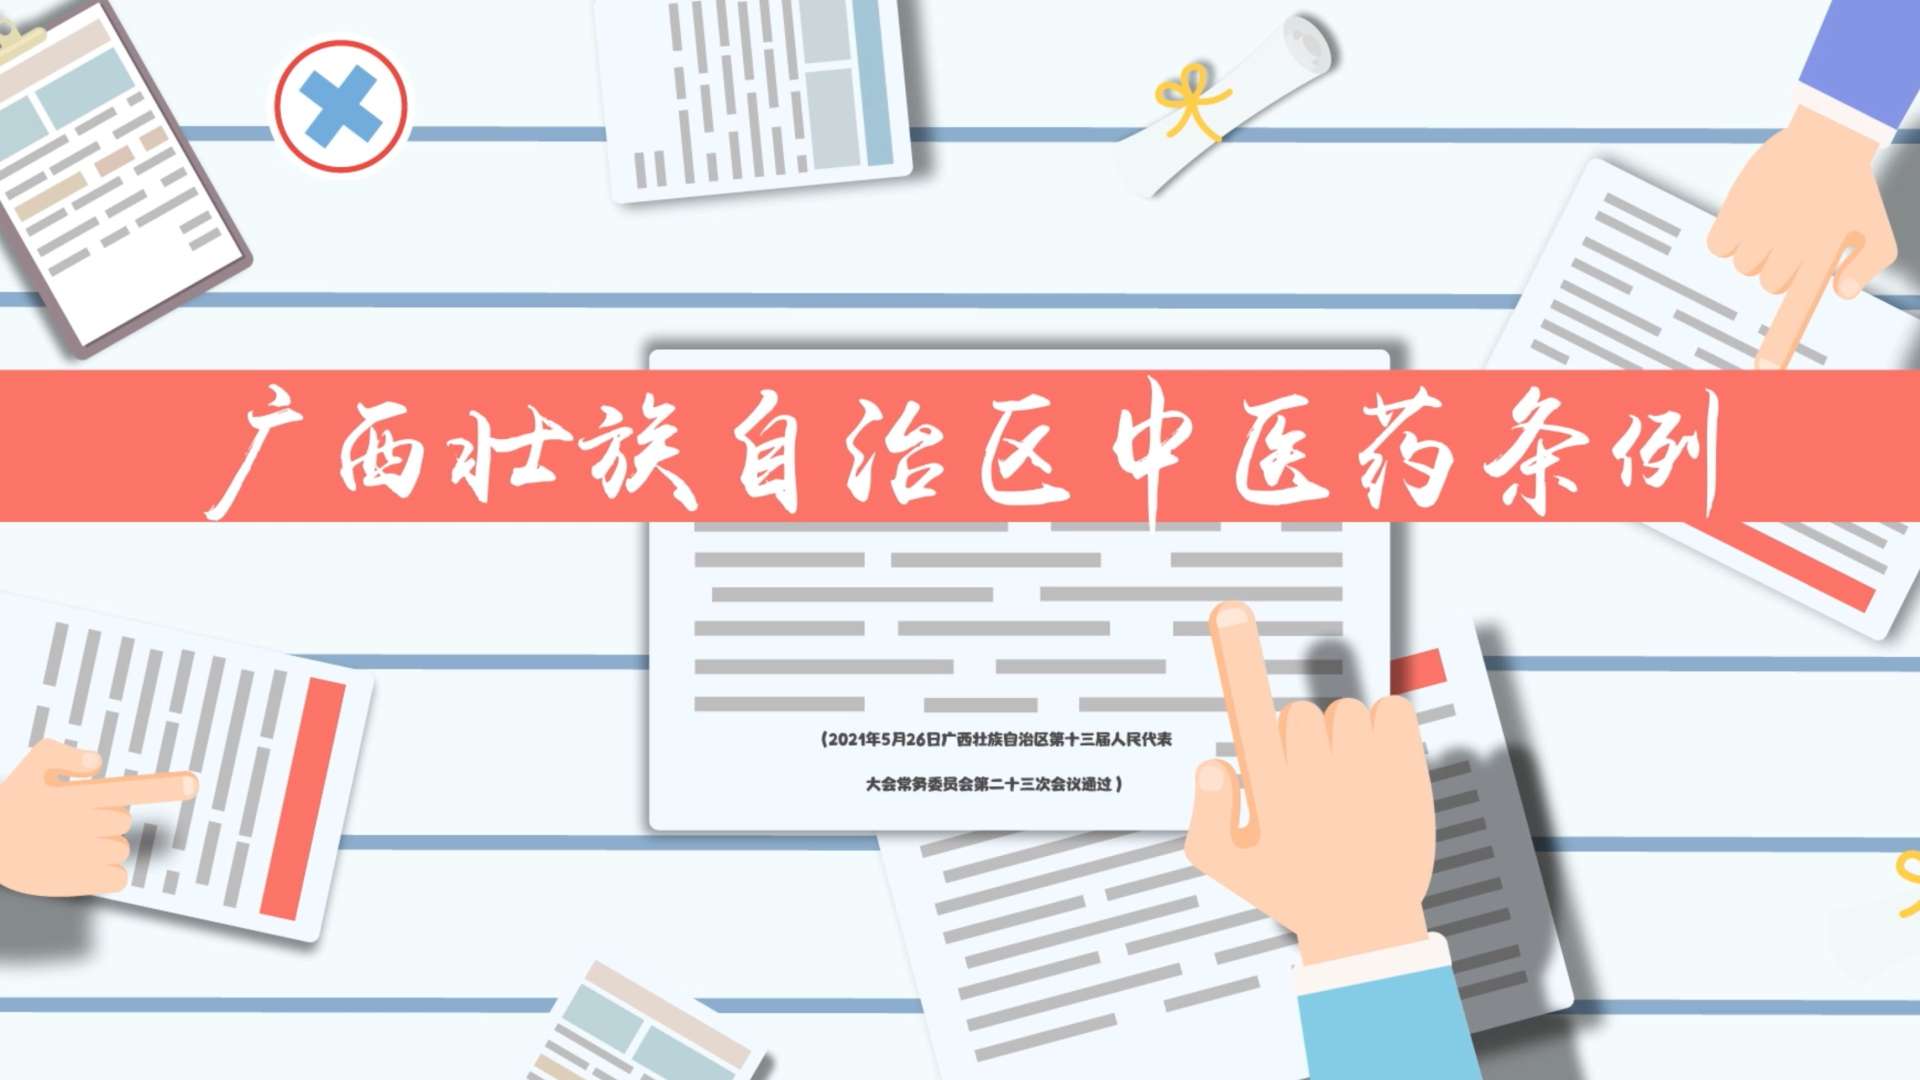 广西壮族自治区中医药条例动画宣传短片